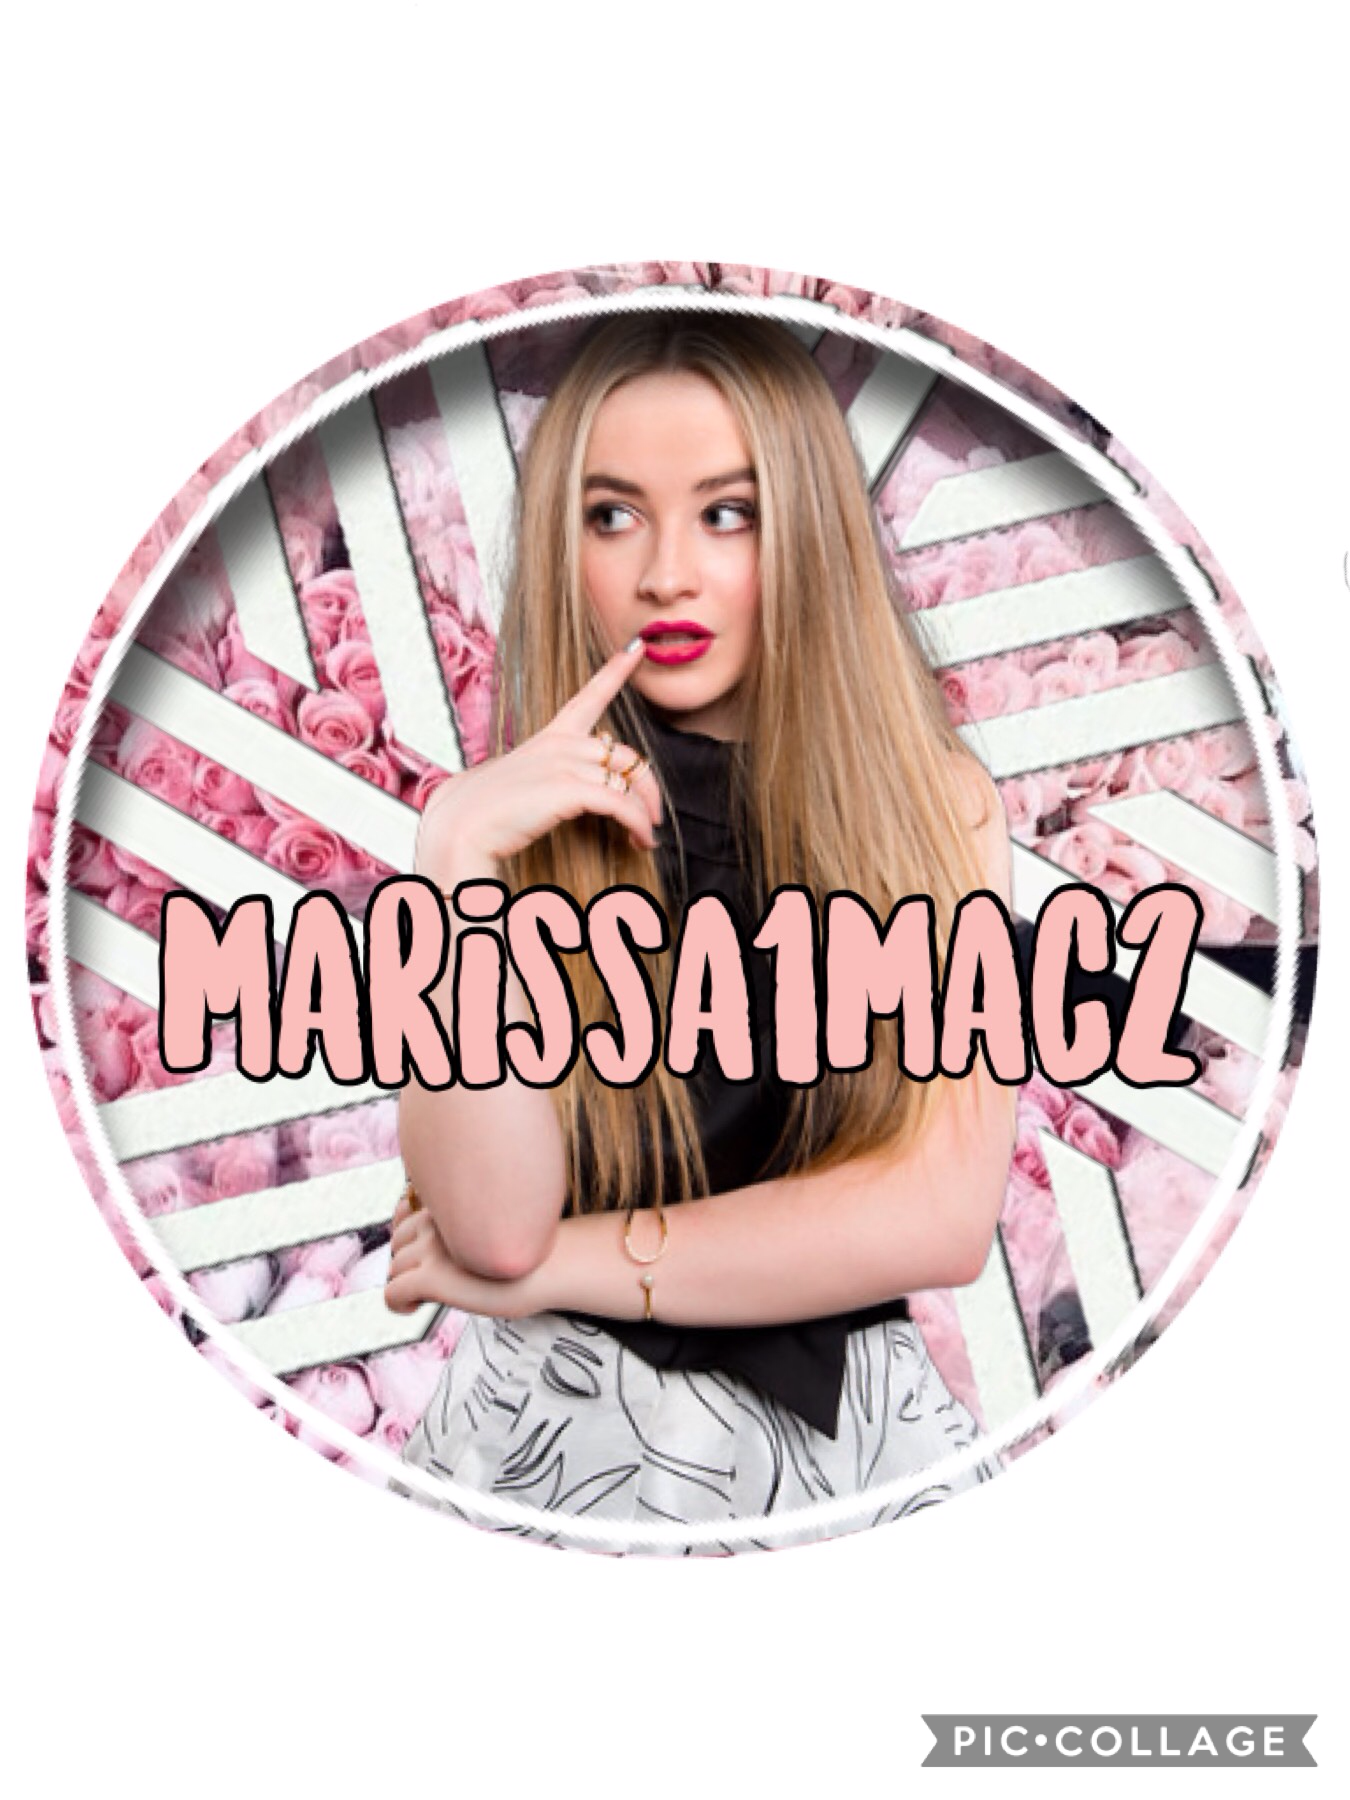 Icon for marissa1mac2